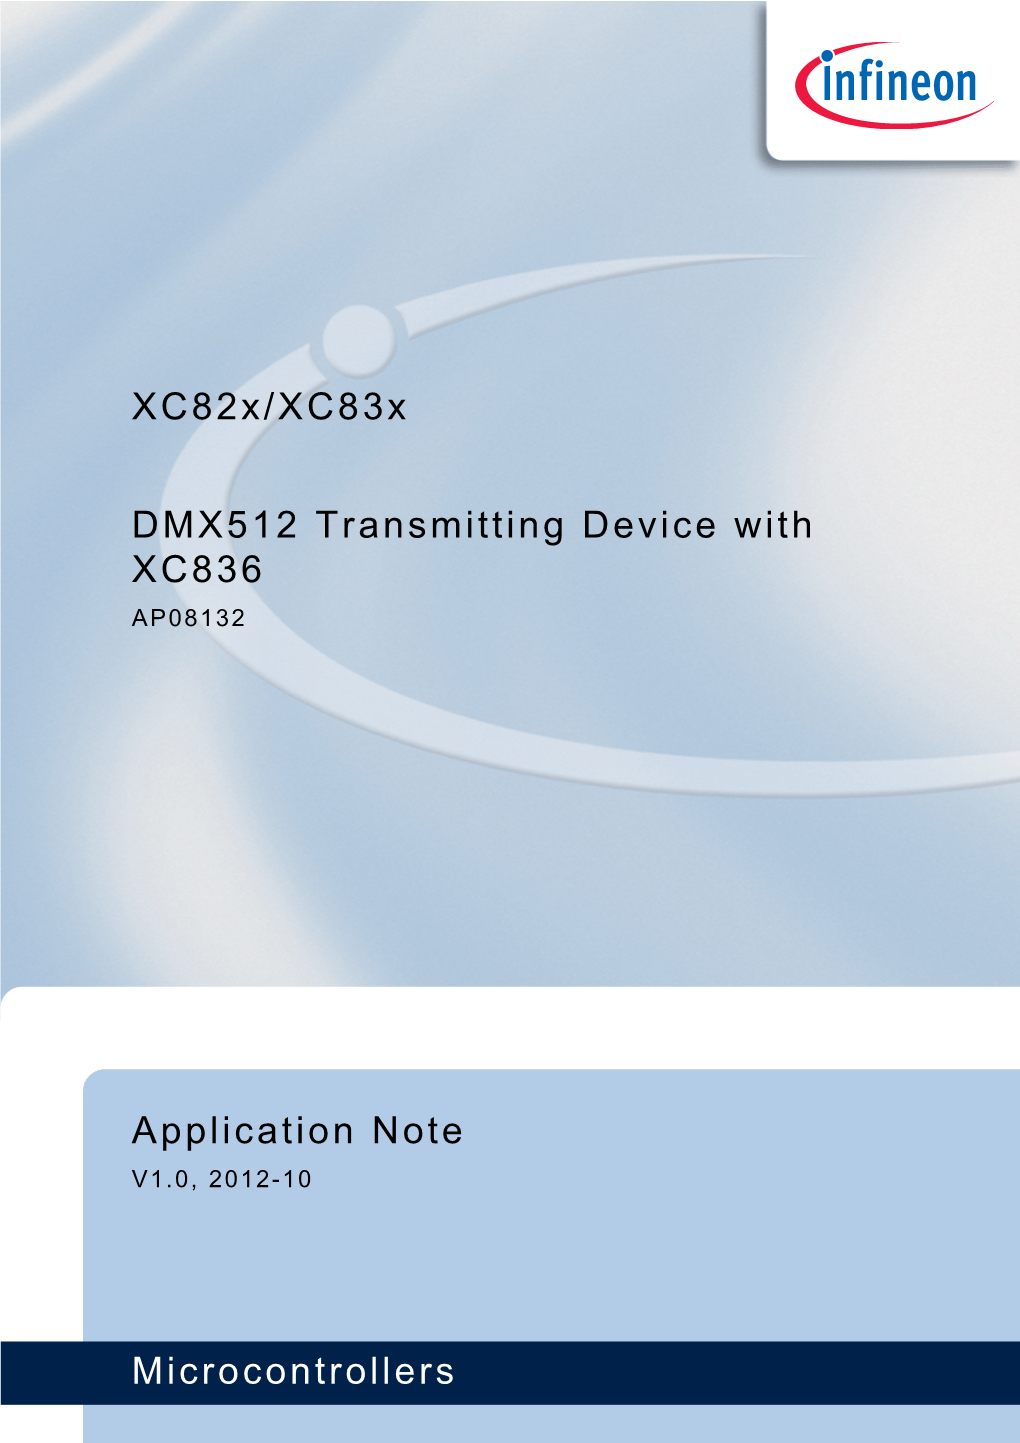 Xc82x/Xc83x DMX512 Transmitting Device with XC836 Microcontrollers